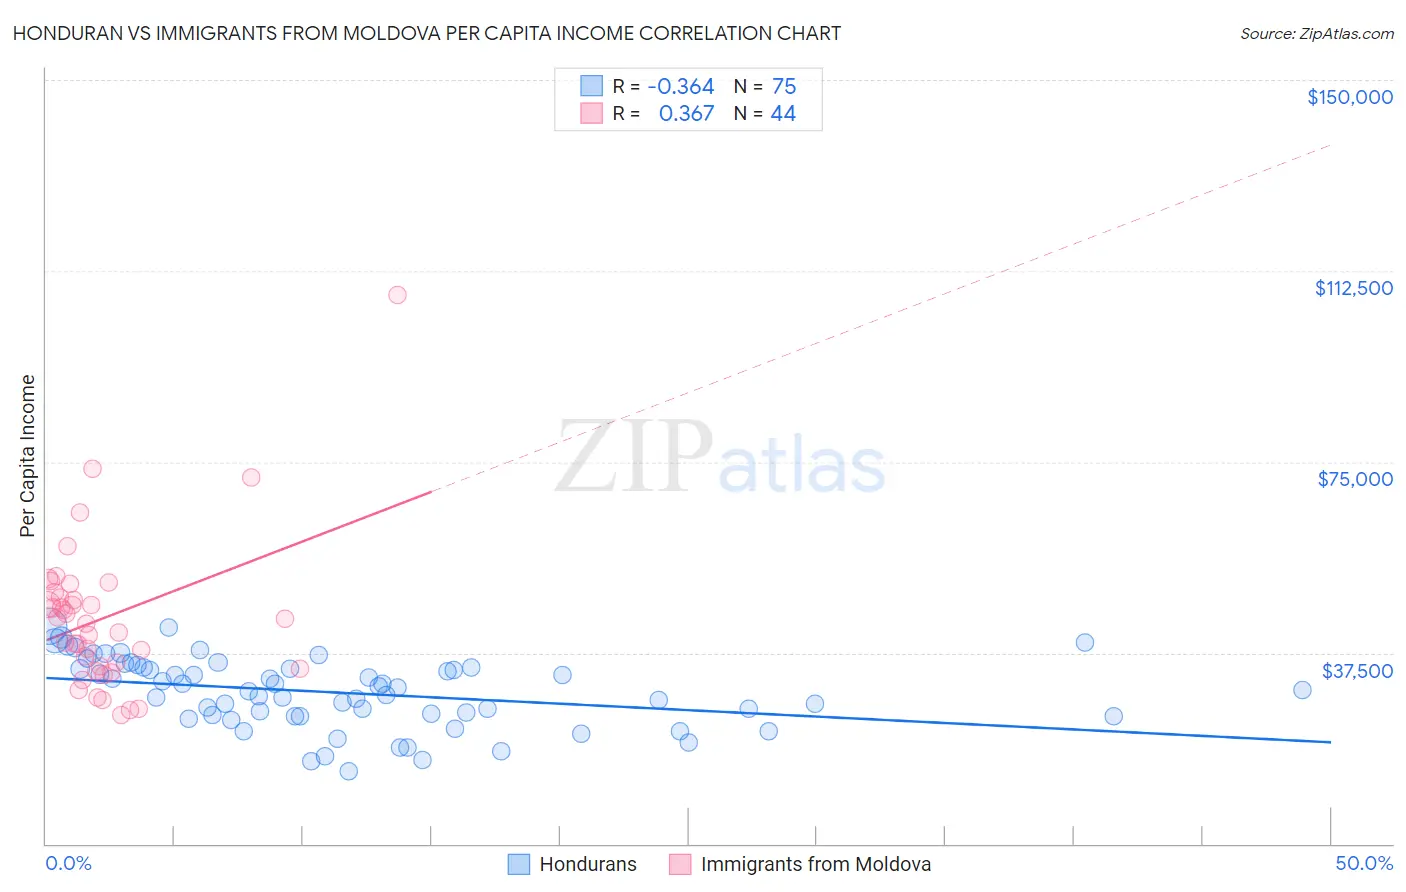 Honduran vs Immigrants from Moldova Per Capita Income